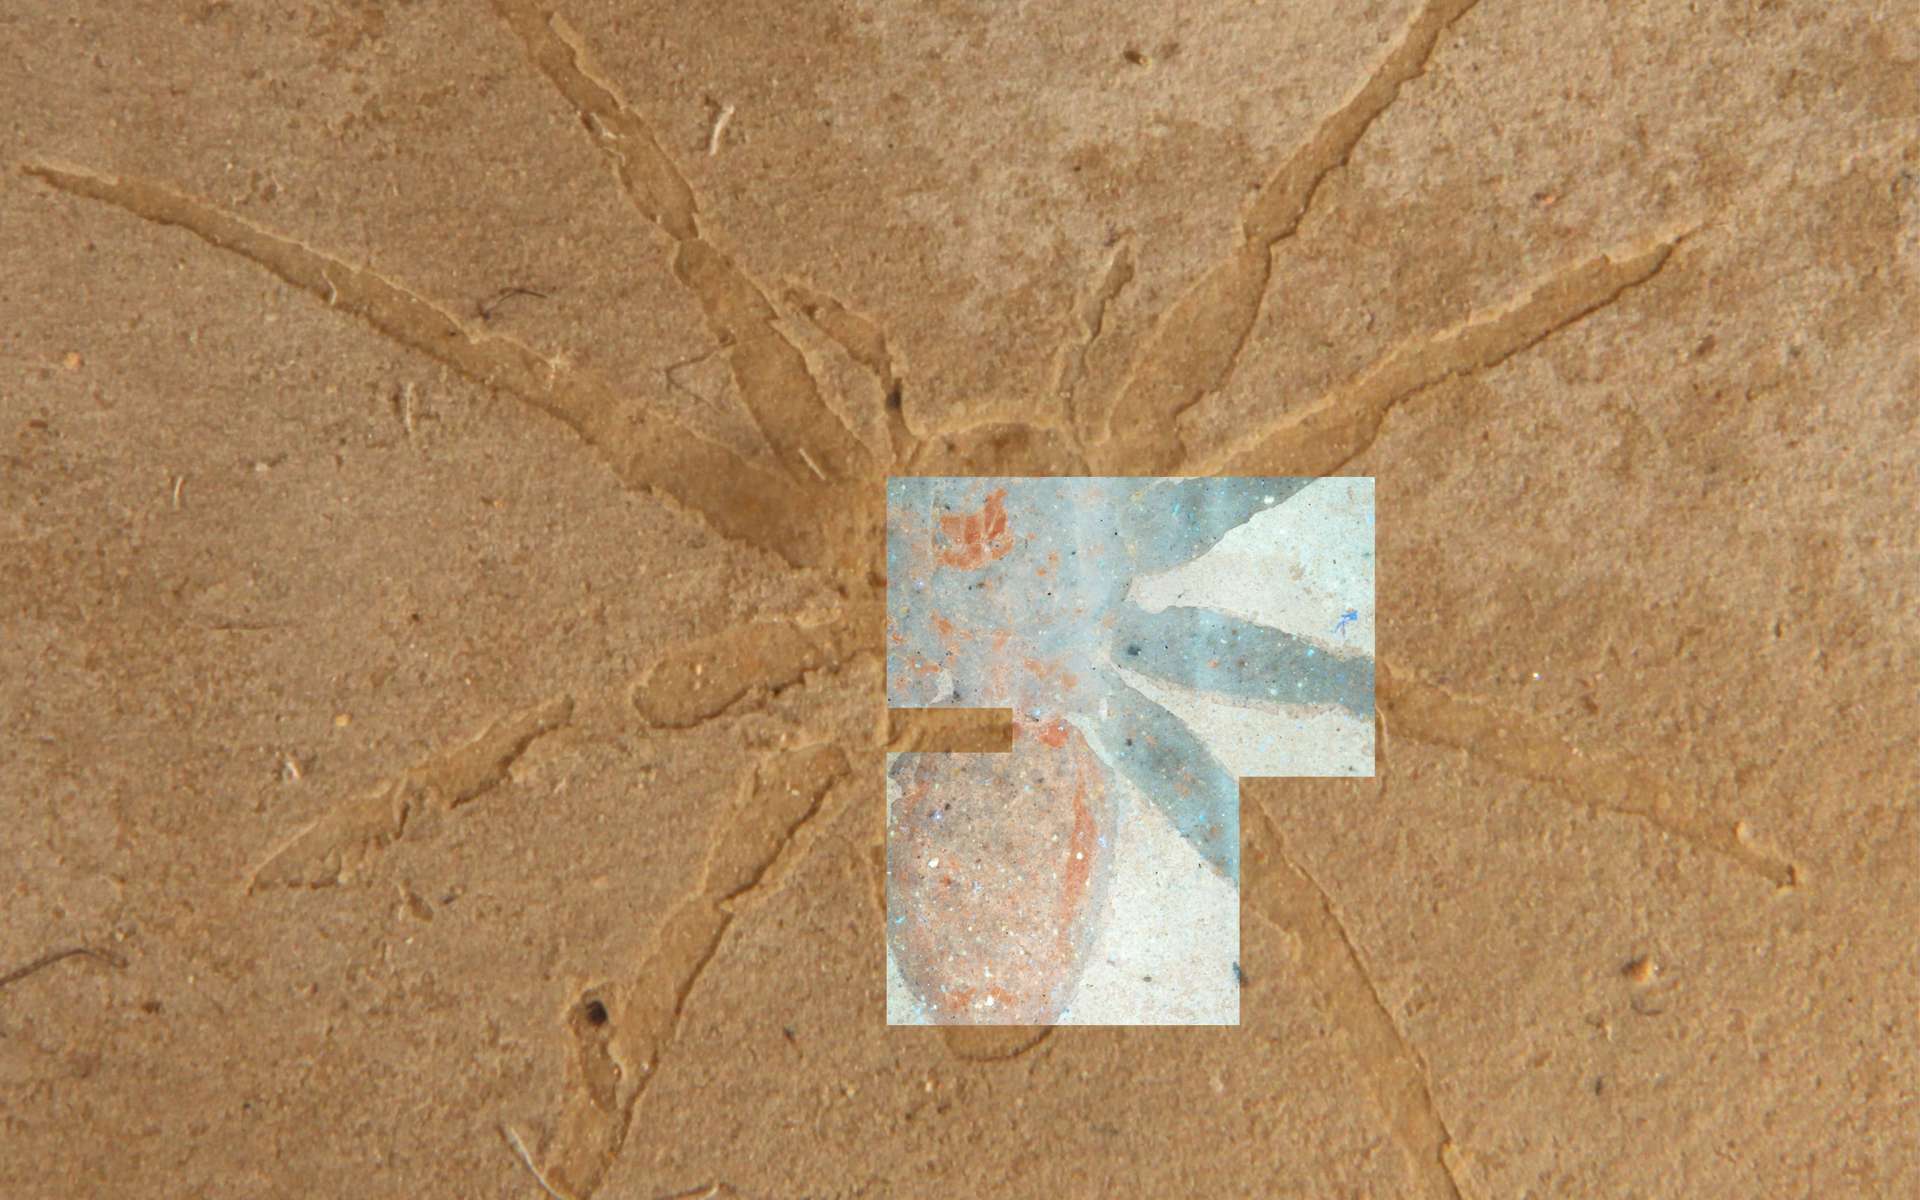 Araignée fossilisée de la Formation d'Aix-en-Provence en France vue dans un échantillon à la main recouvert d'une image de microscopie fluorescente du même fossile. © Olcott et al.